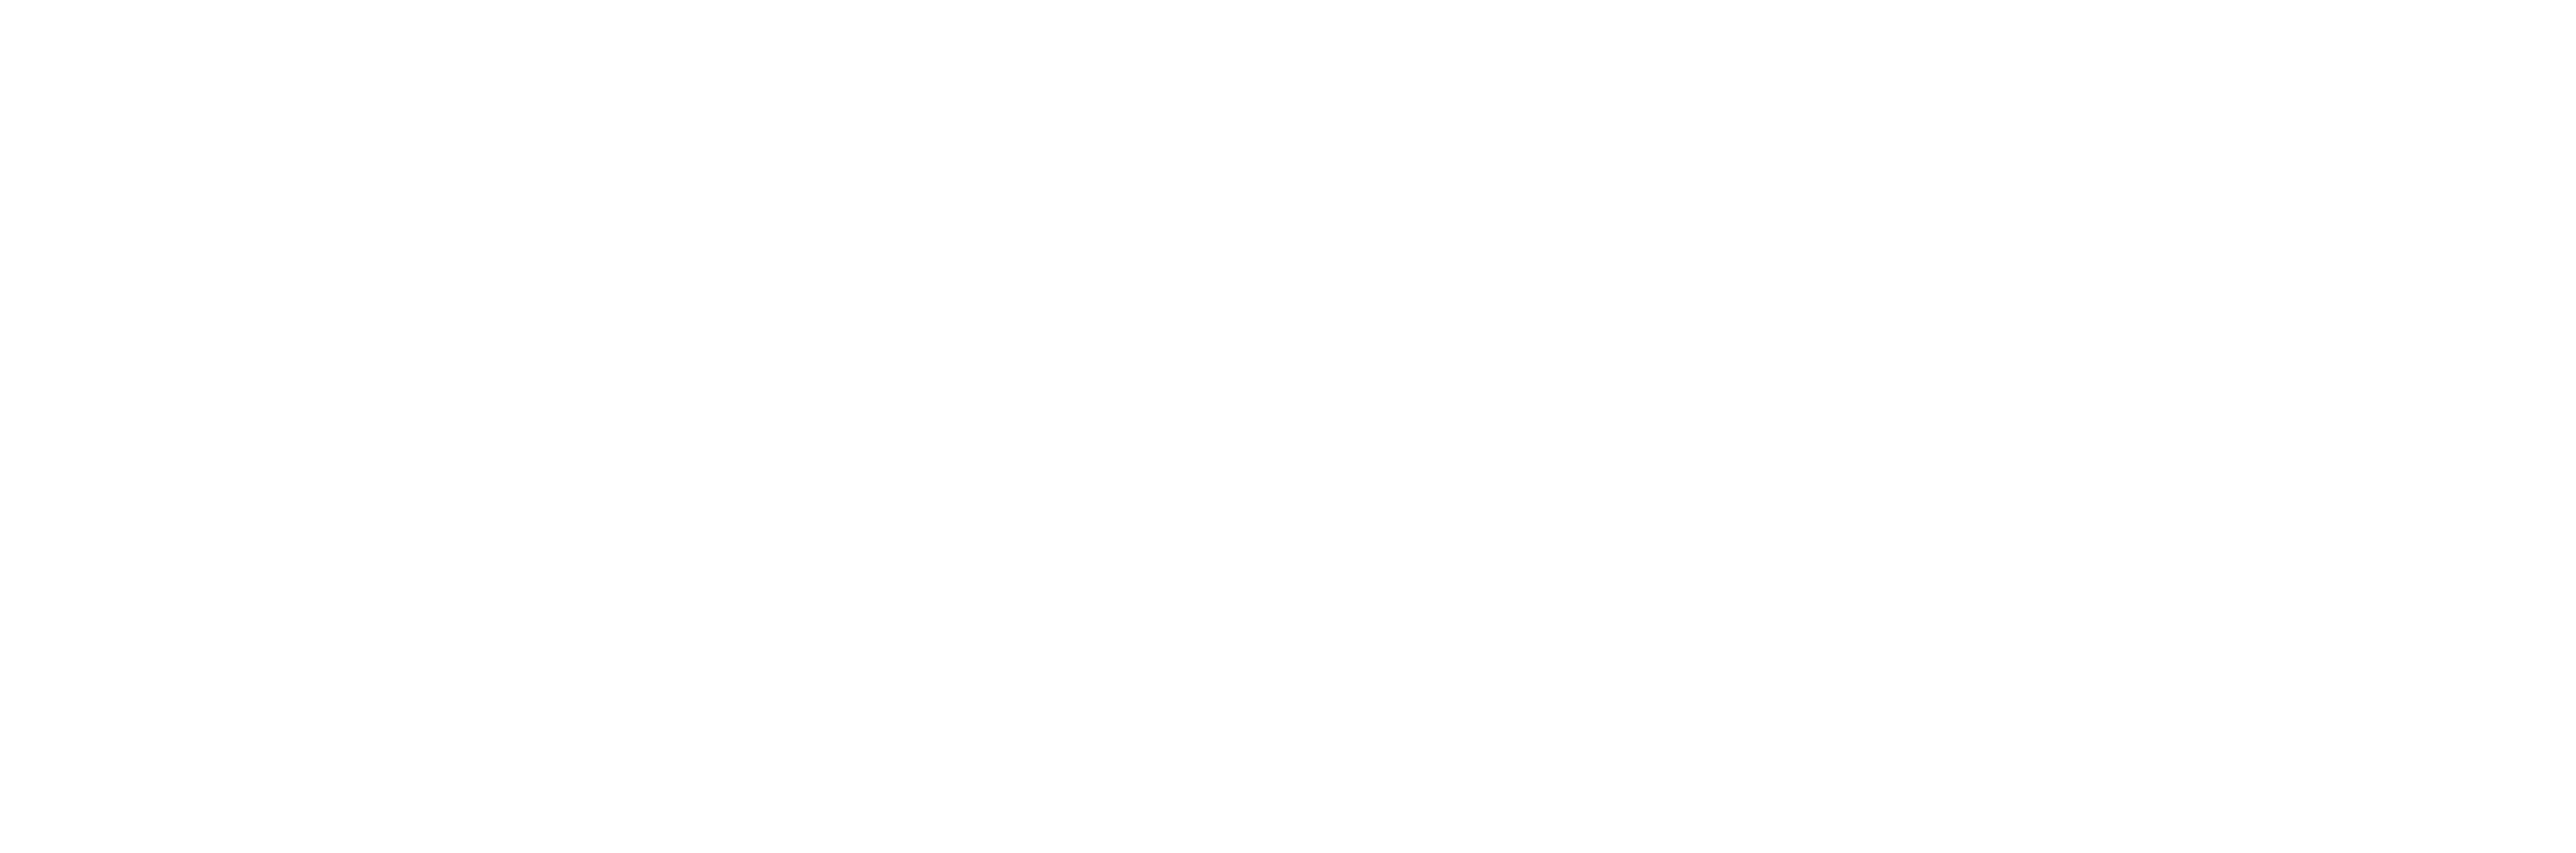 AniCura Marina Baixa Hospital Veterinario logo